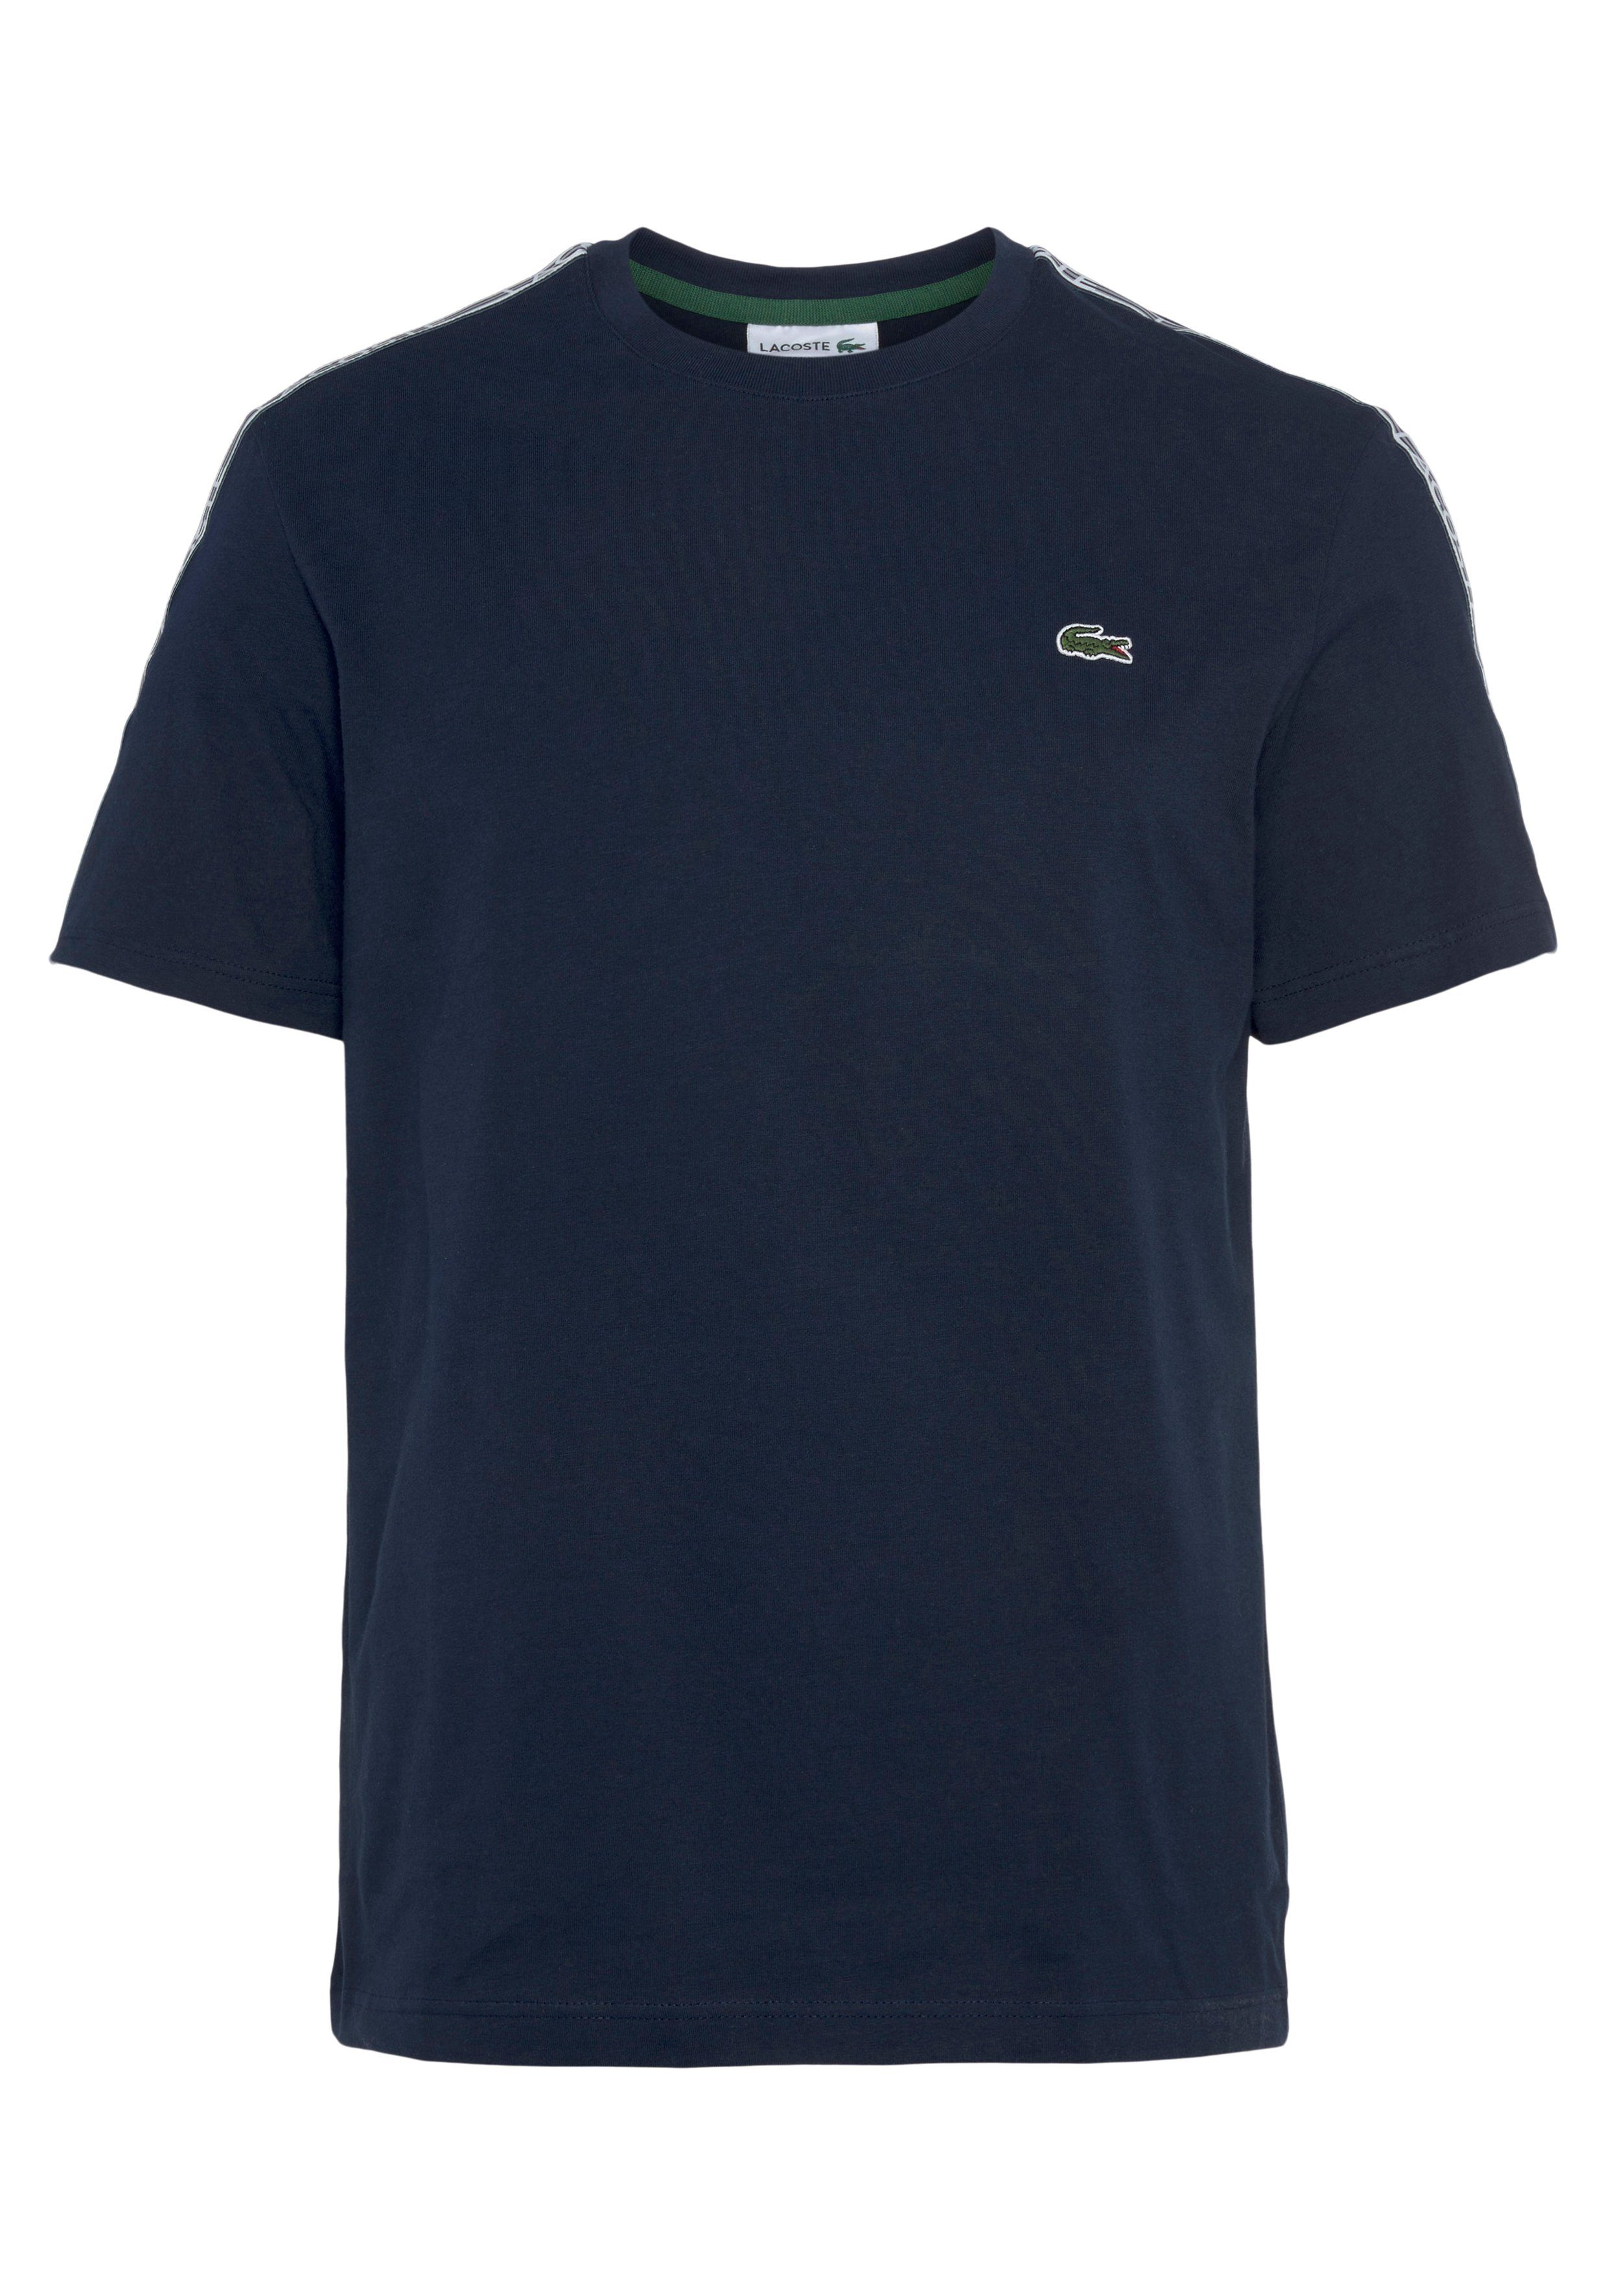 Produktliste Lacoste T-Shirt mit blue an den Schultern Kontrastband navy beschriftetem